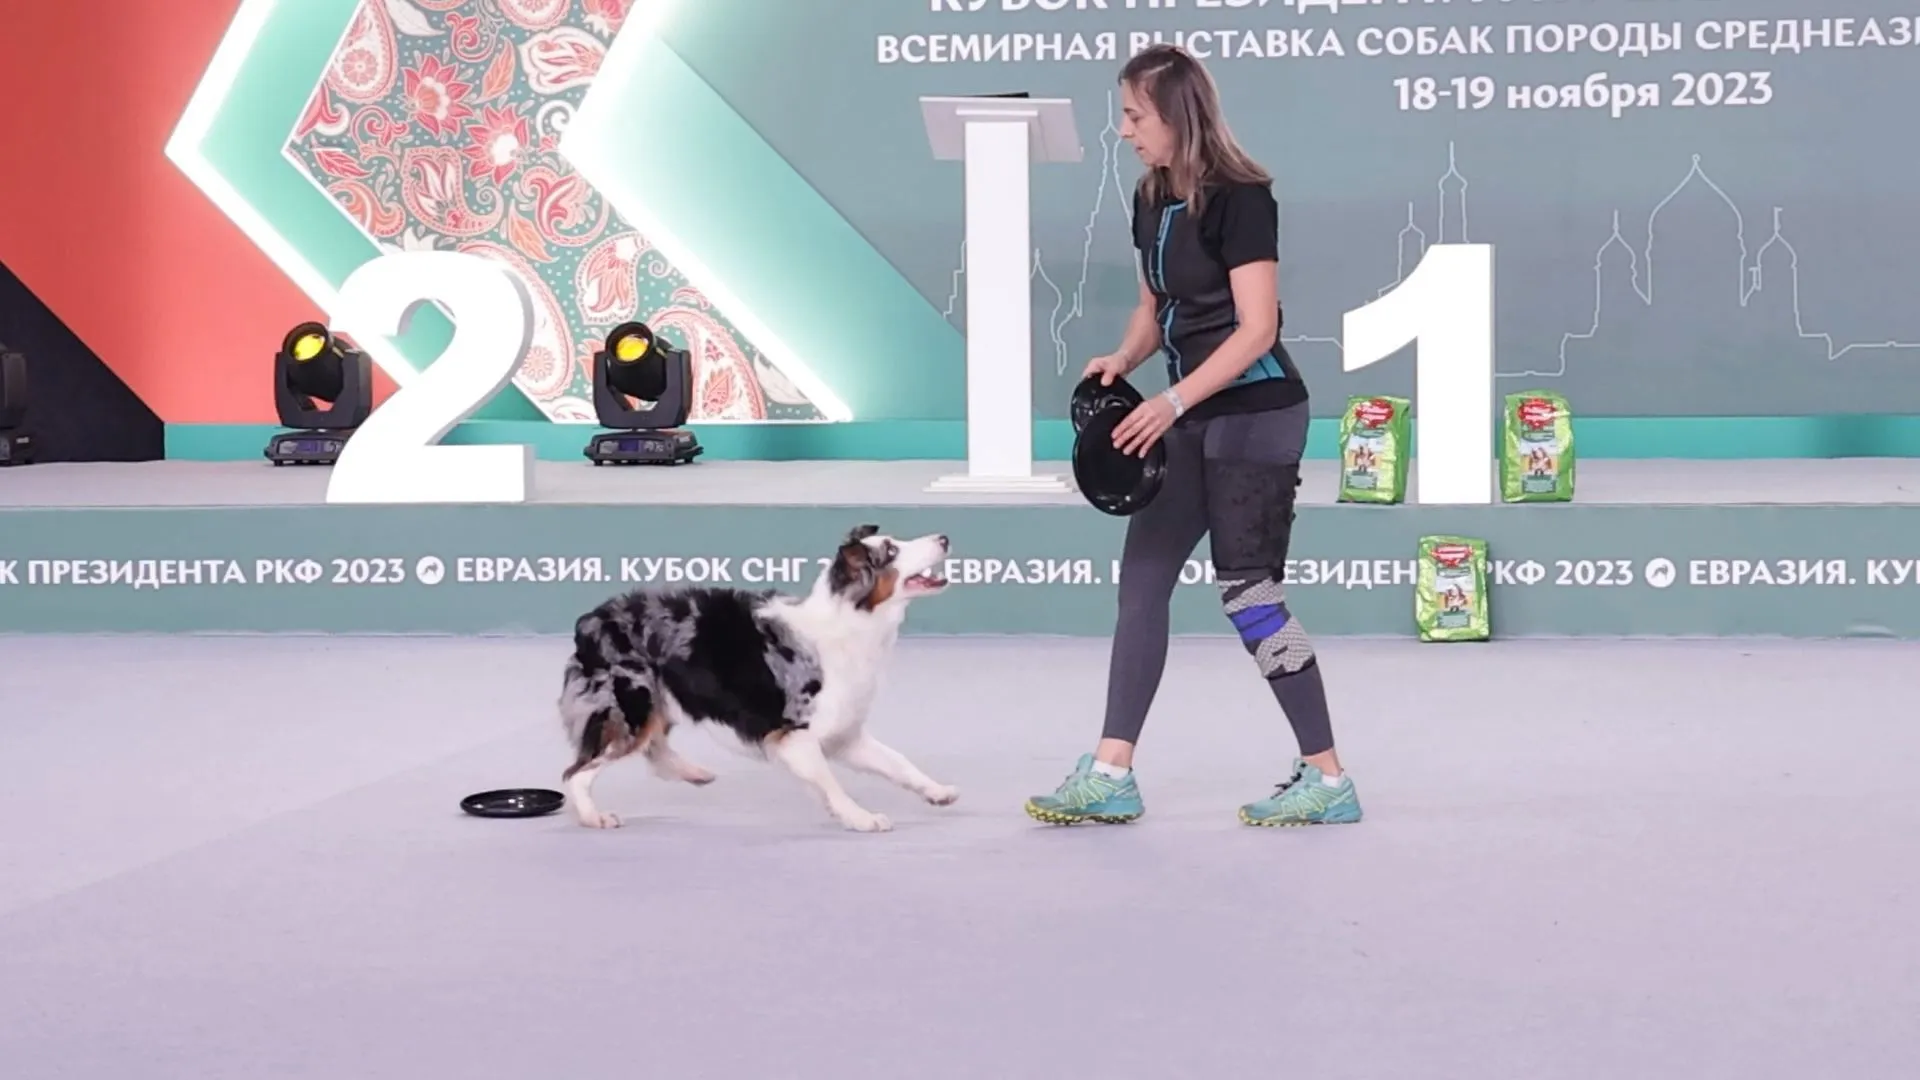 Une performance de haut niveau à quatre pattes : L'Eurasia Dog Show 2023 à Krasnogorsk